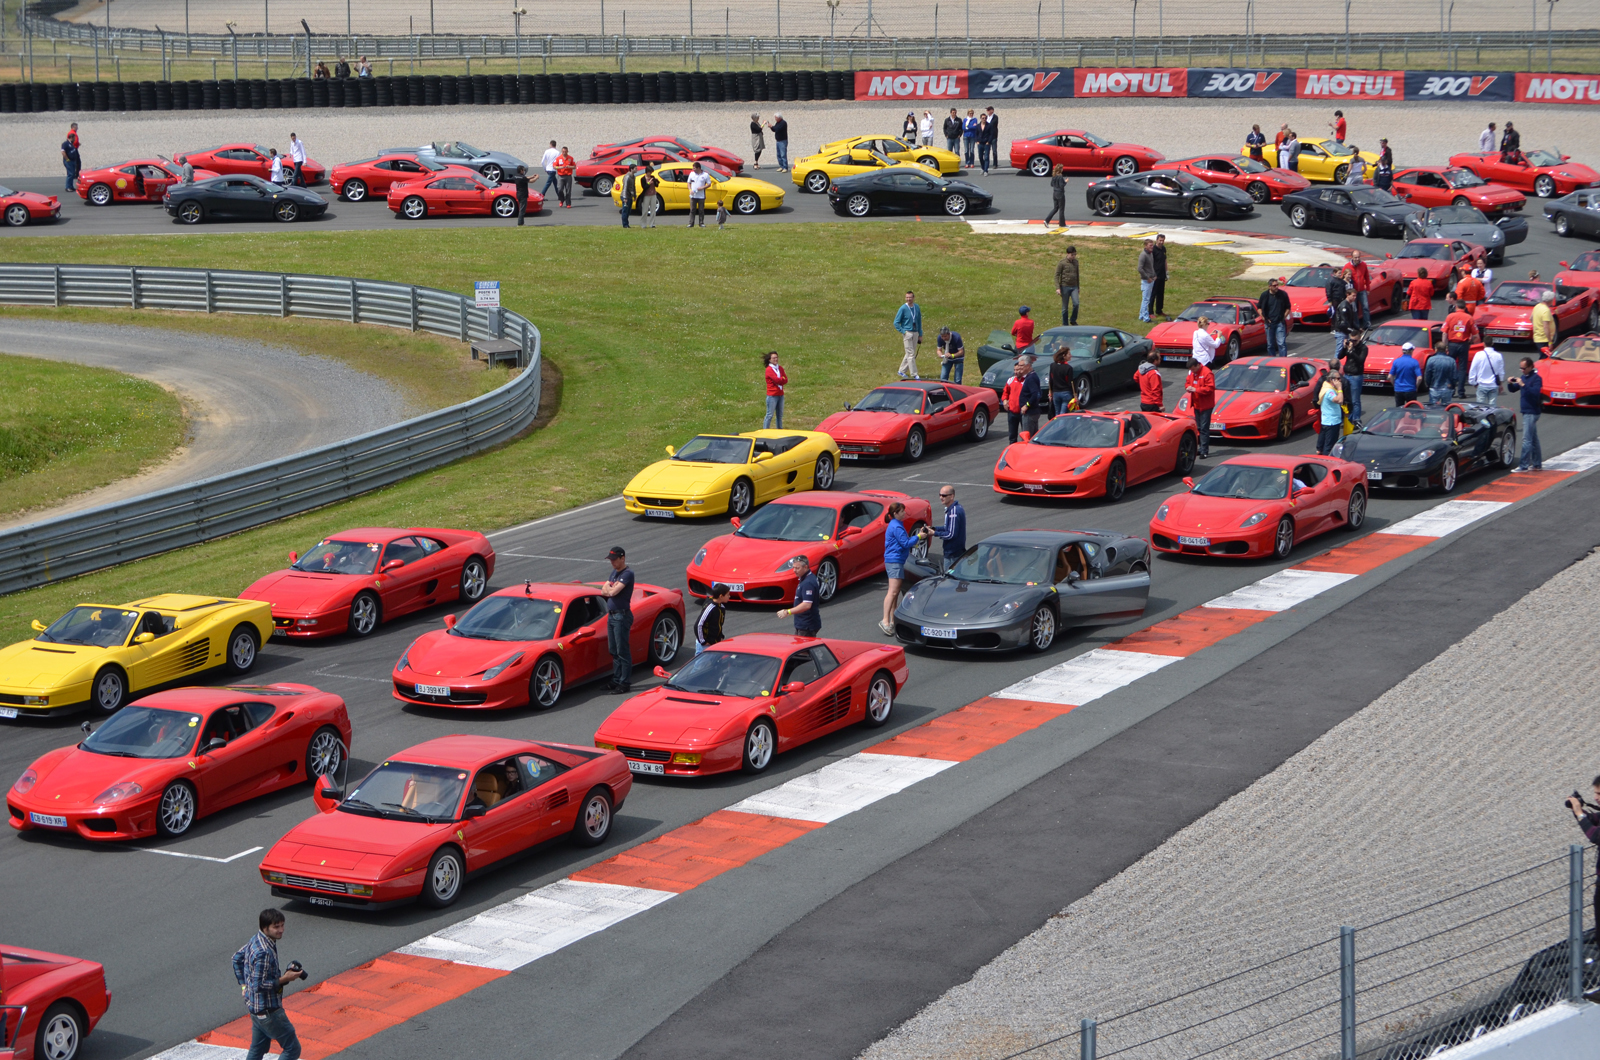 500 Ferrari's tegen kanker 2013!